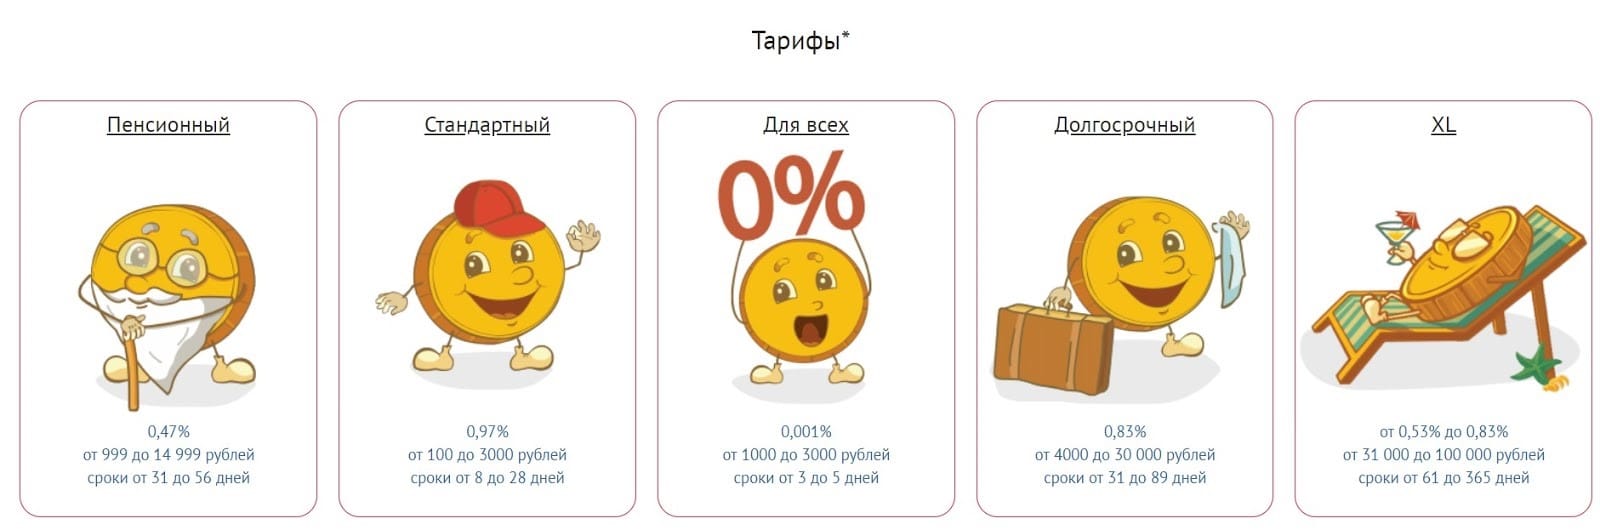 denga.ru тарифы займов